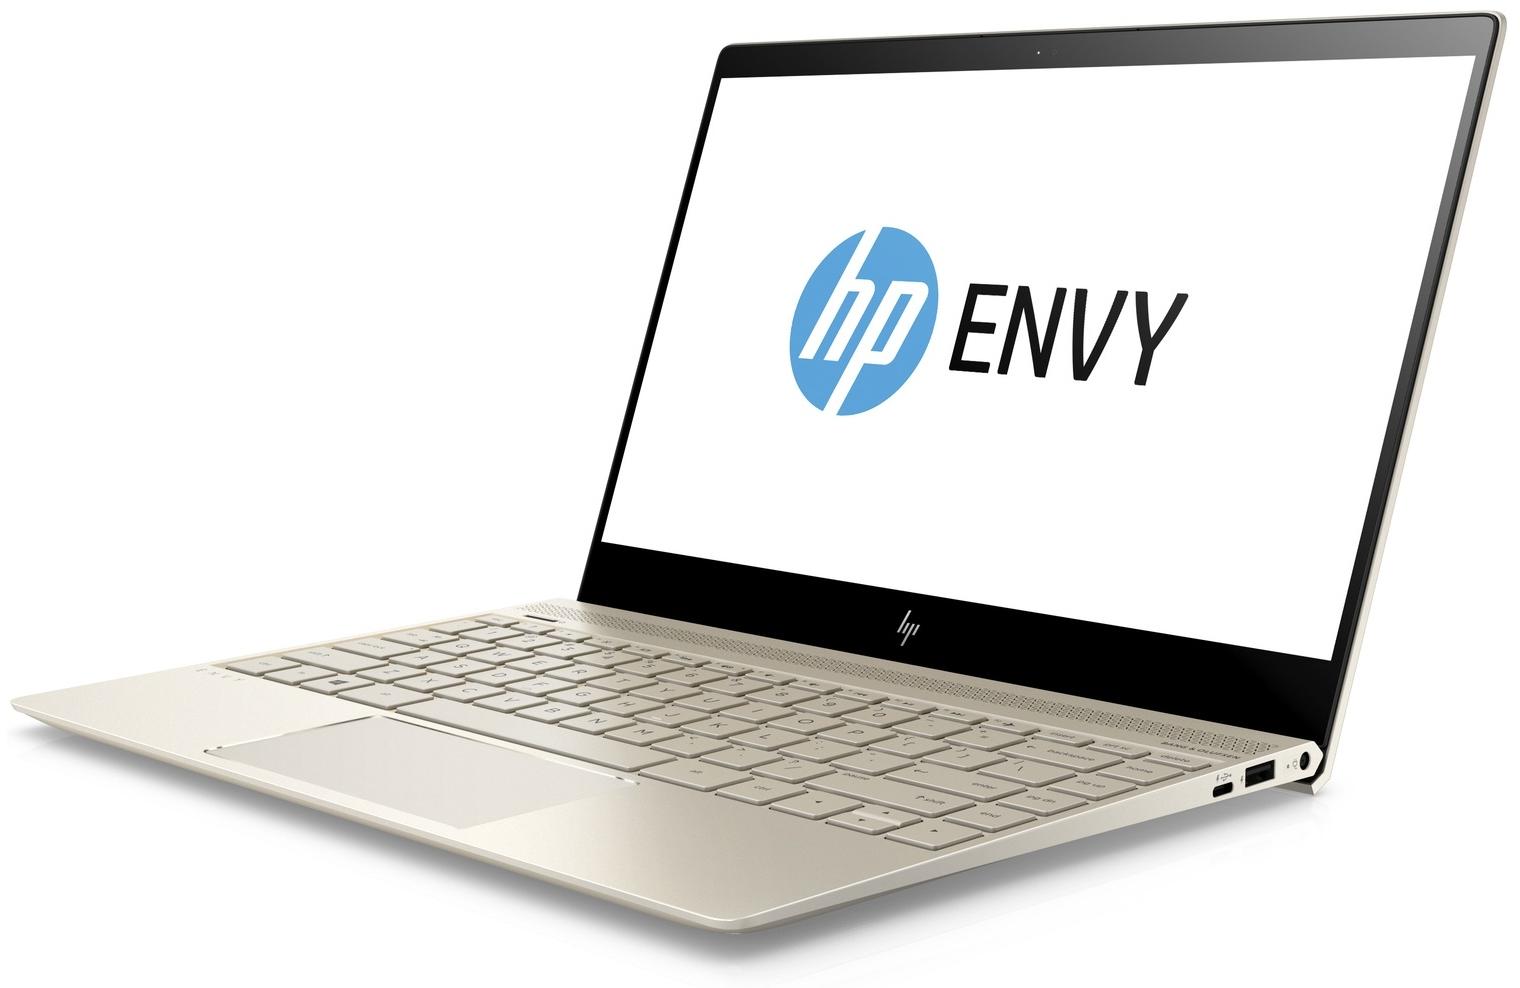   HP Envy 13-ad107ur (2PP96EA)  1